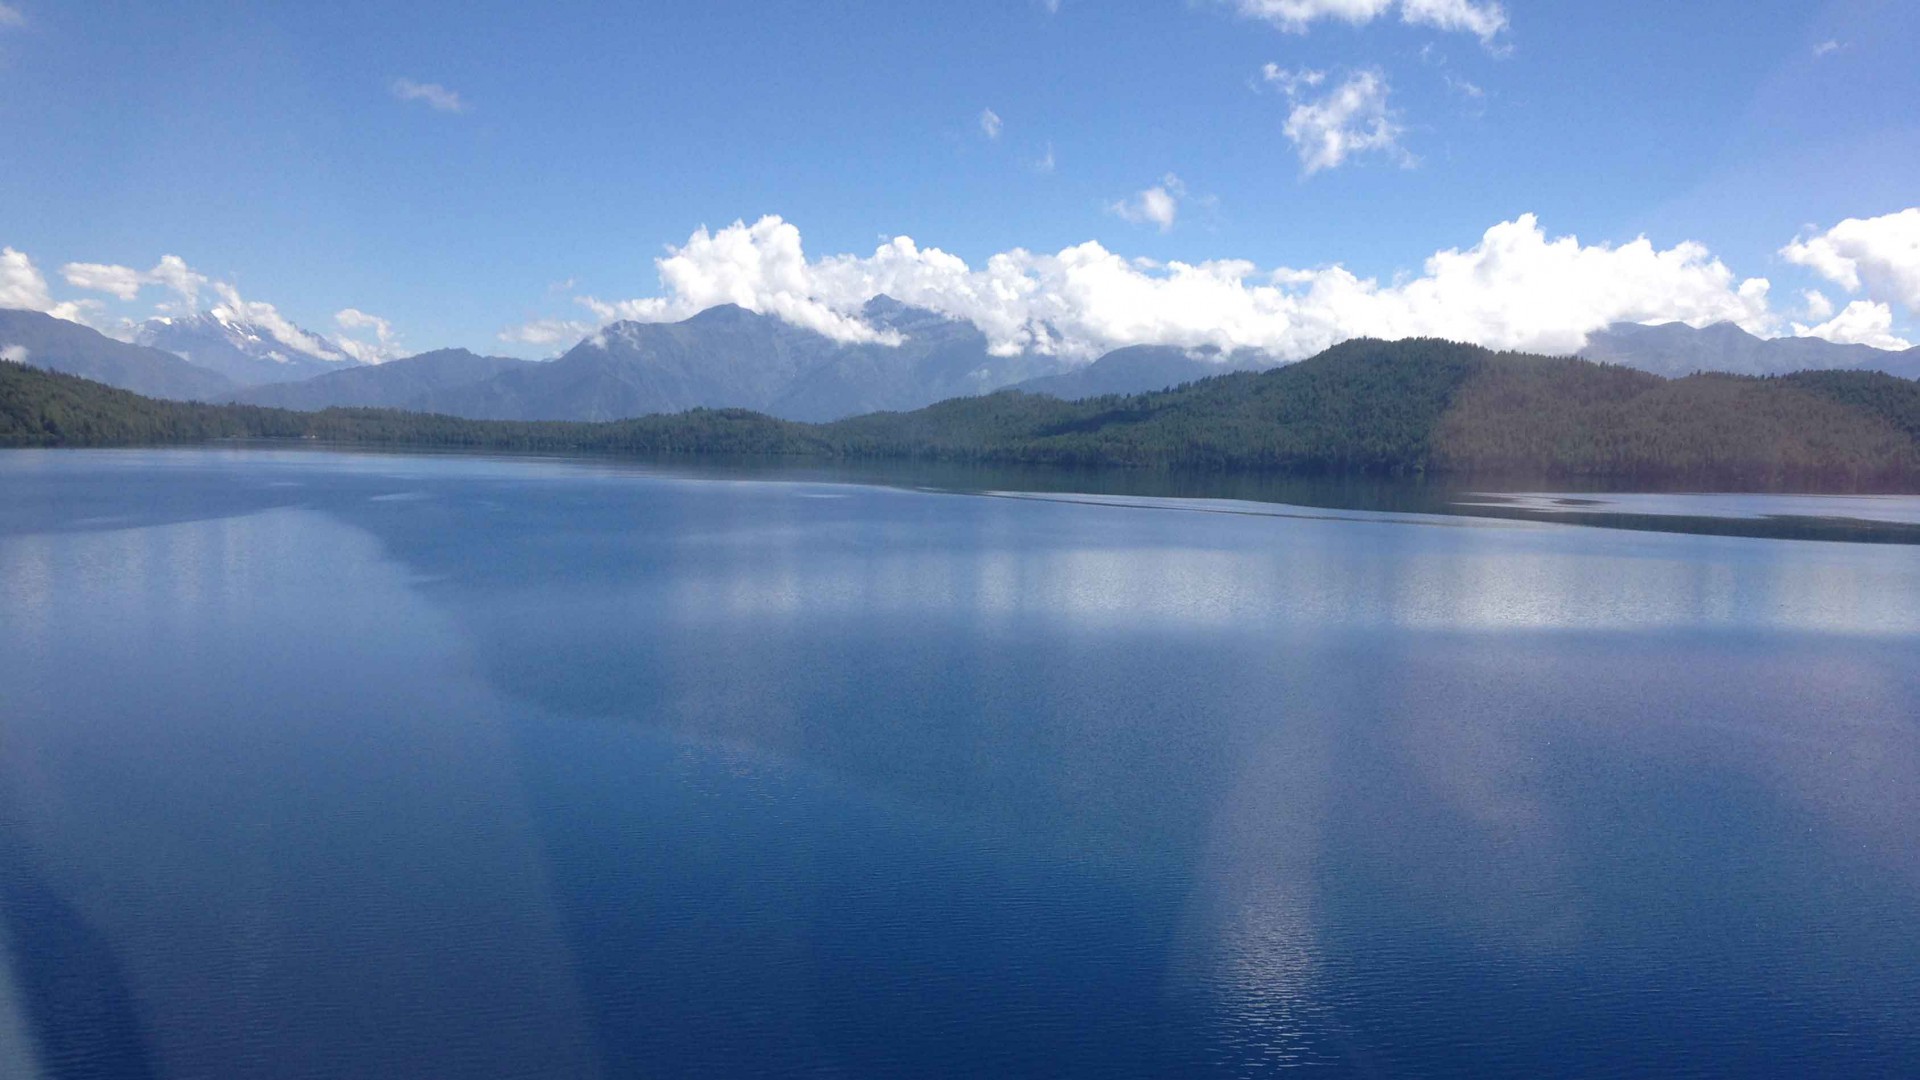 Rara Lake Trek - First Environmental